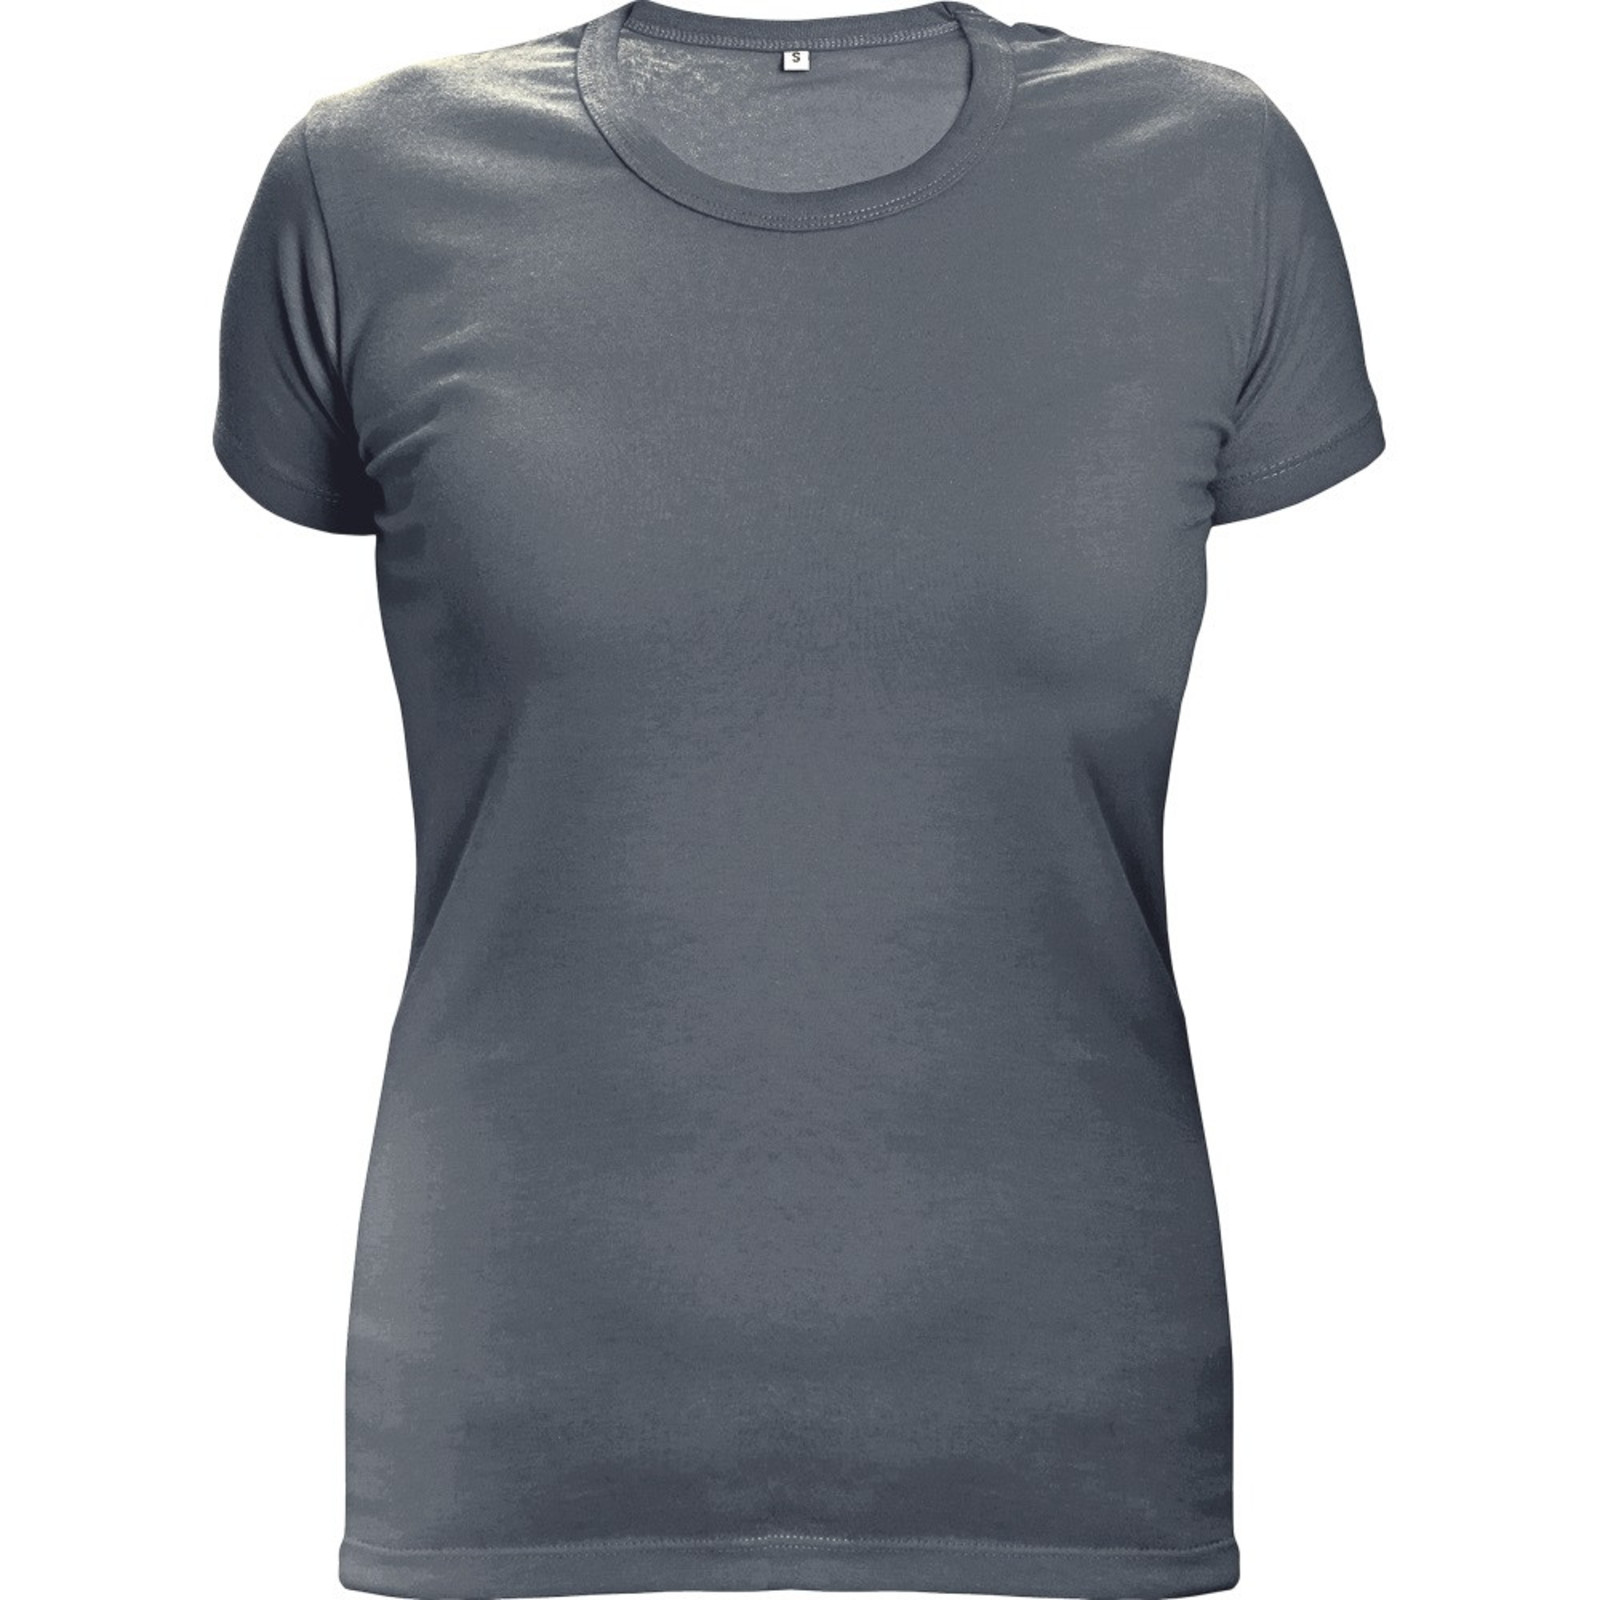 Dámske tričko s krátkym rukávom Surma Lady - veľkosť: XXL, farba: grafitová